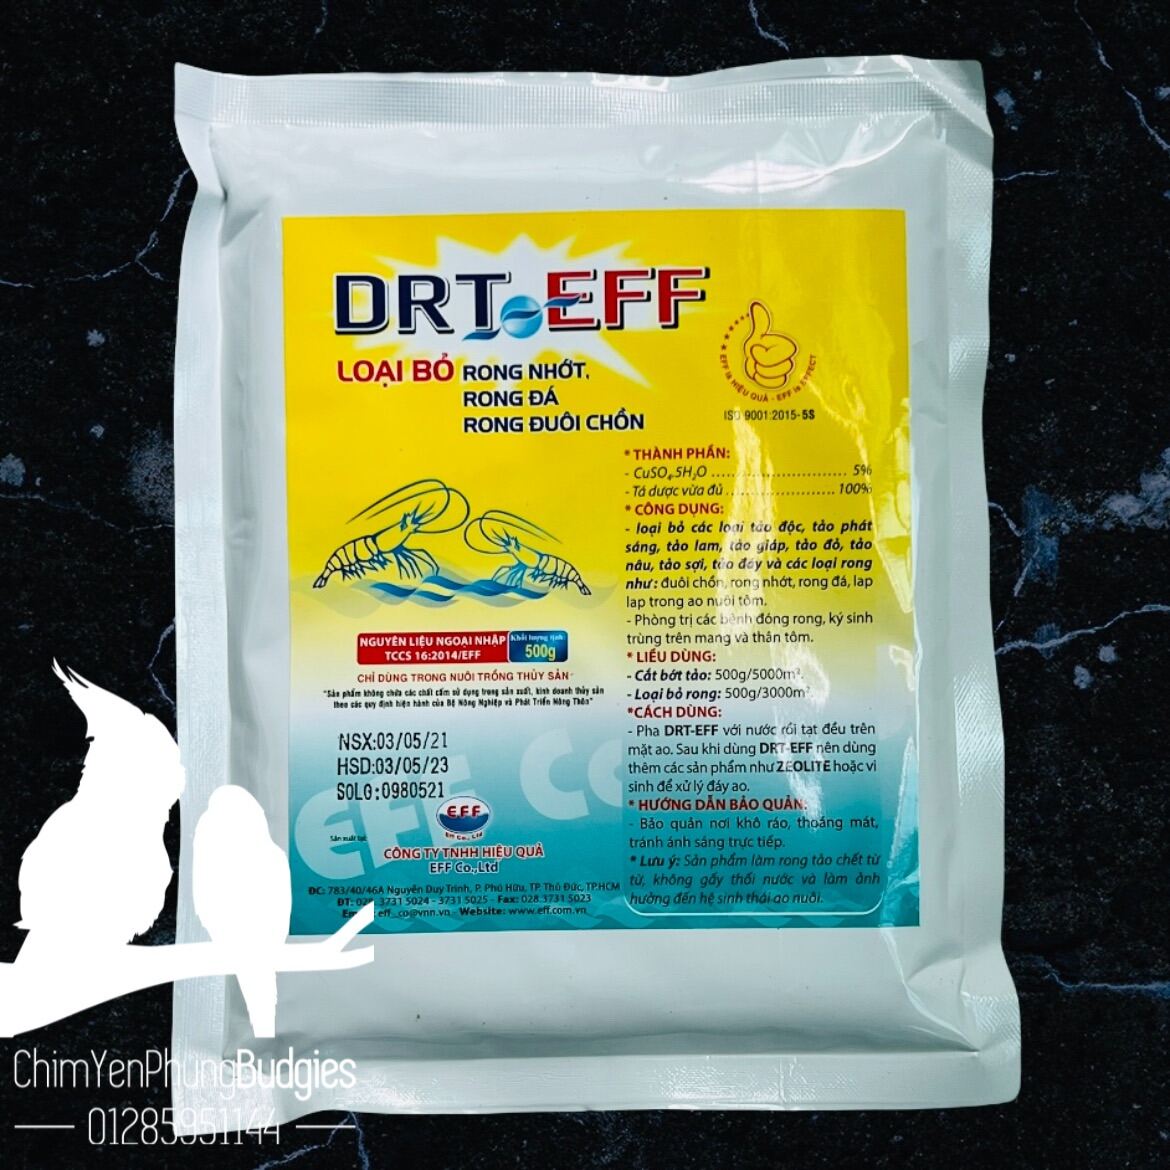 DRT-EFF loại bỏ rong nhớt, rong đá, rong đuôi chồn, tảo độc trong ao tôm.